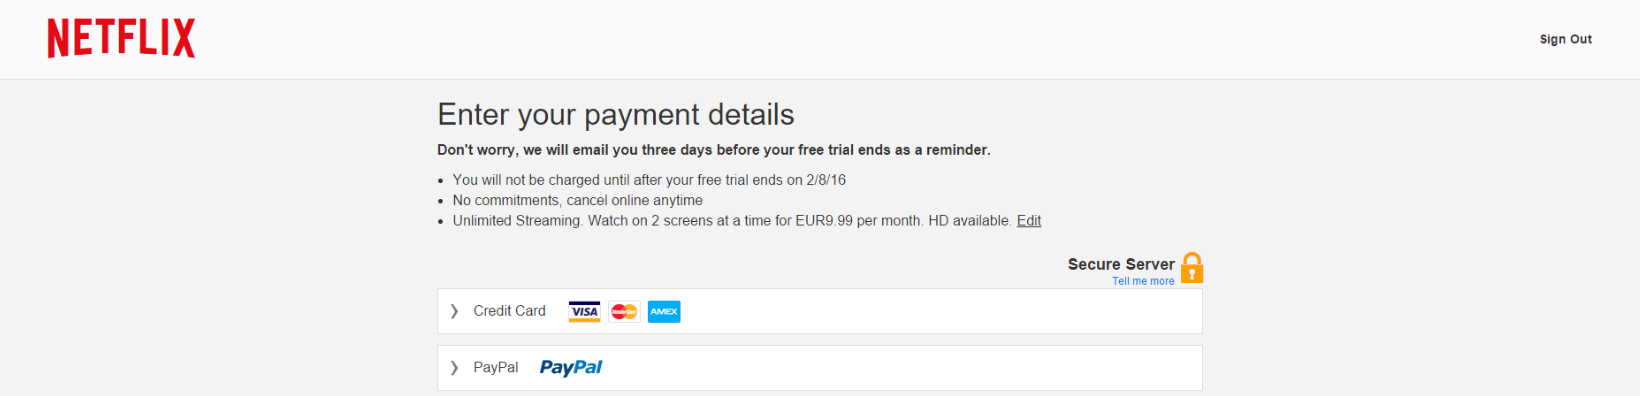 Jak může бесплатно пользоваться сервисом Netflix в течение месяца